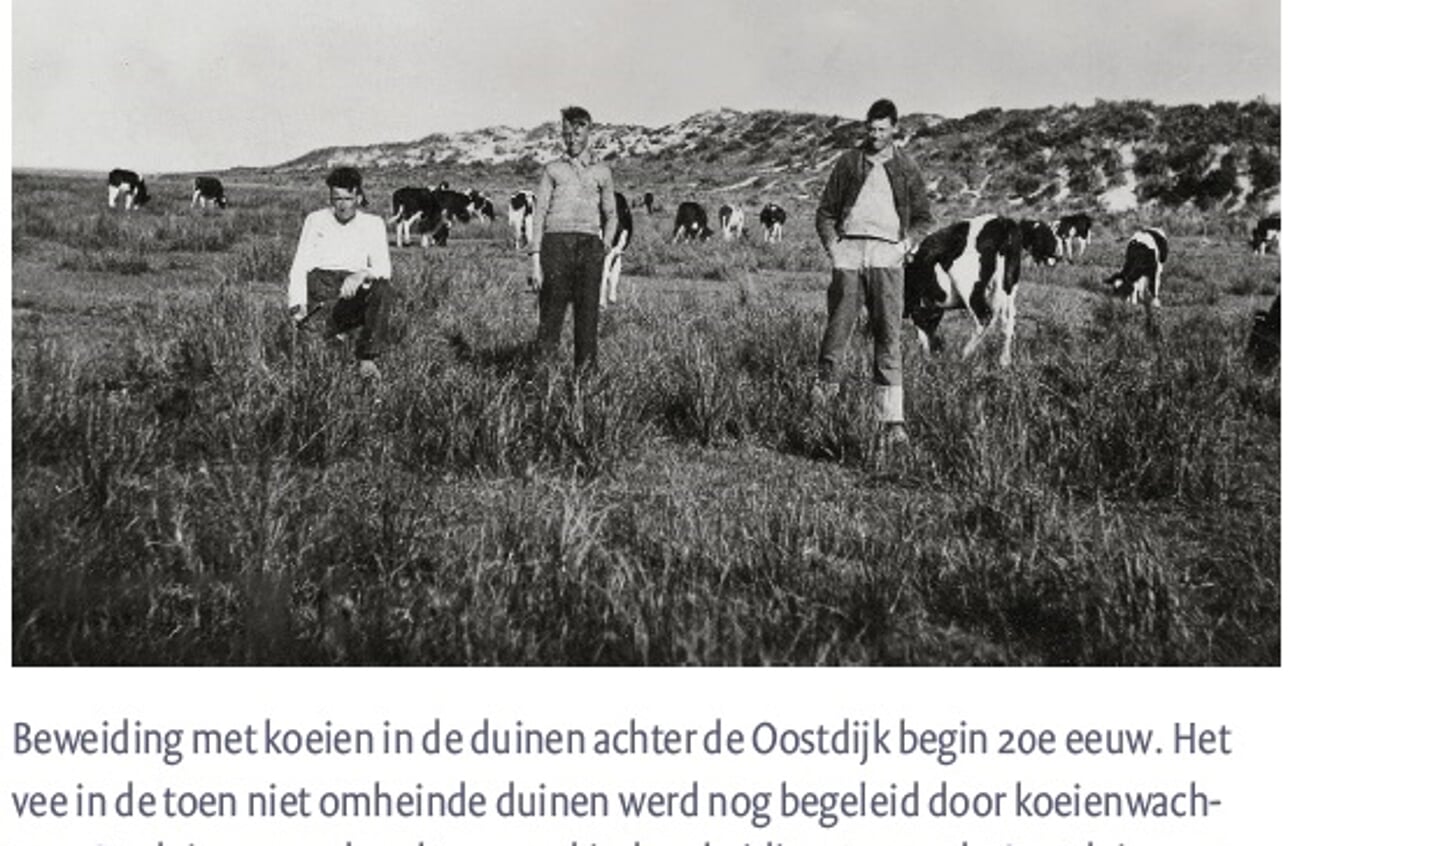 Beweiding met koeien in de duinen begin 20ste eeuw.